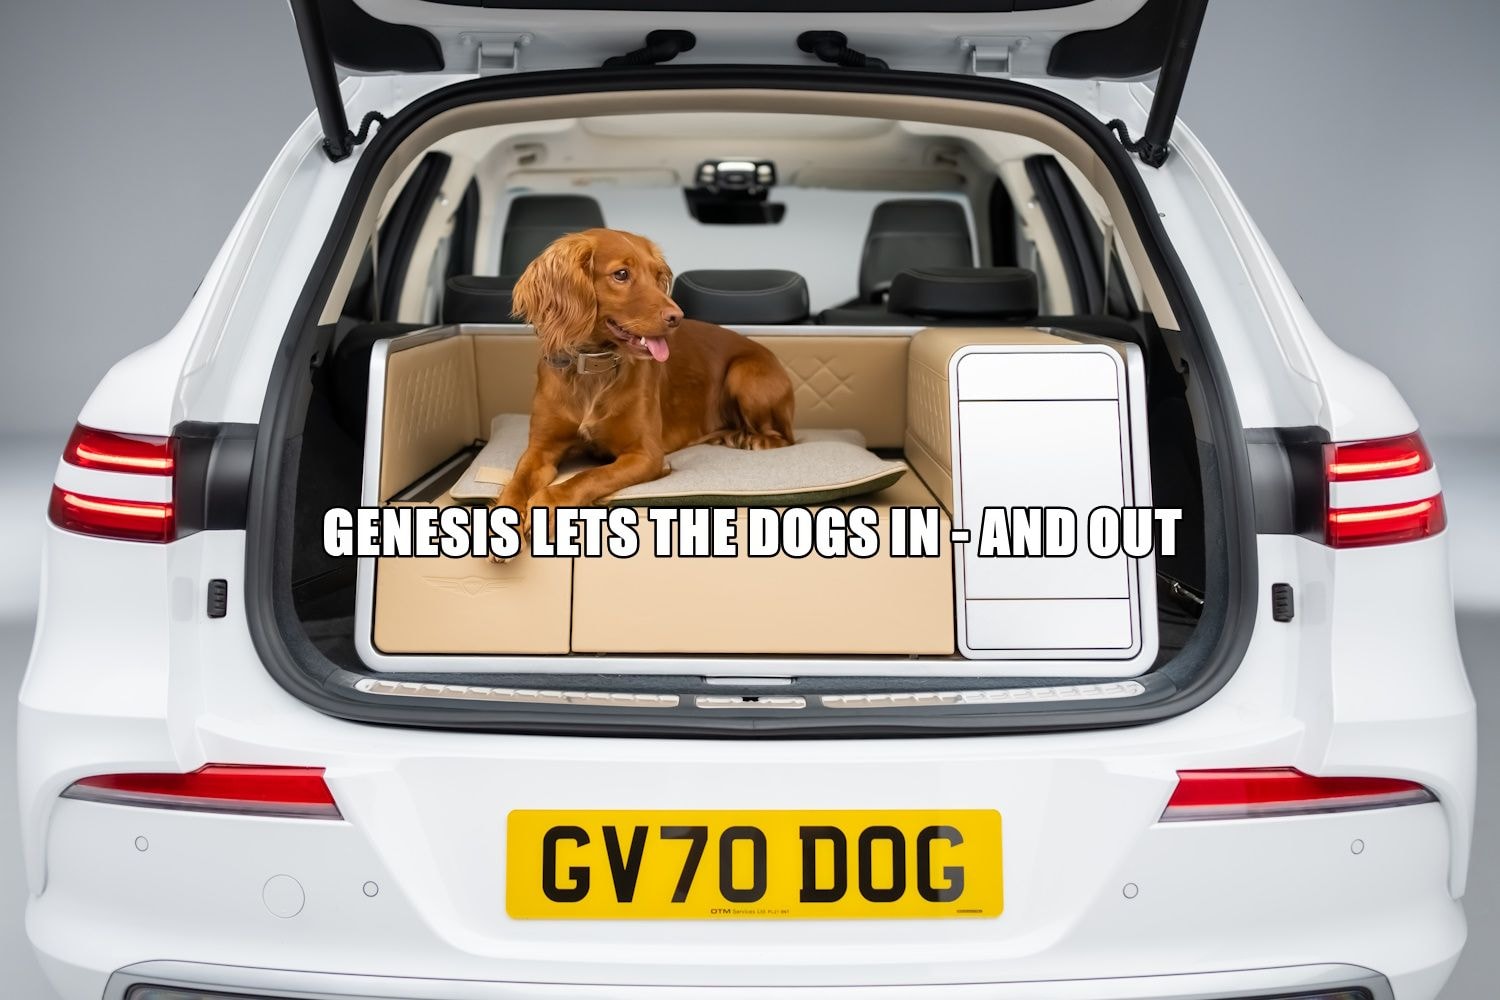 Koncepcja Genesis X Dog zapewnia luksusowe Vanlife Twojemu najlepszemu (futrzanemu) przyjacielowi